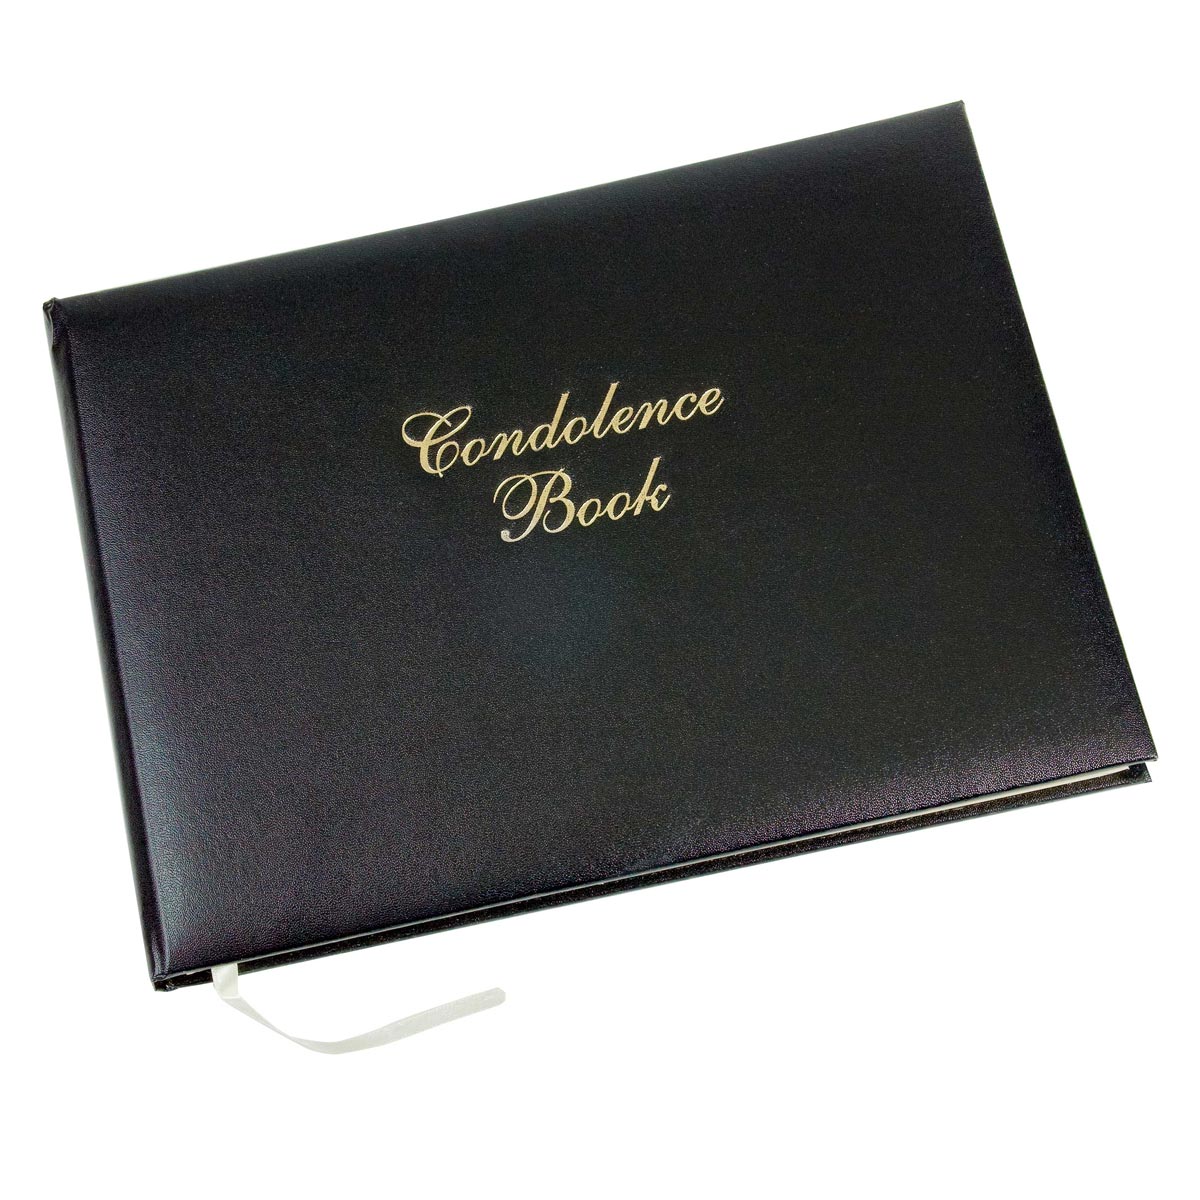 Esposti - Funeral Book of Condolence Black with Presentation Box EL45